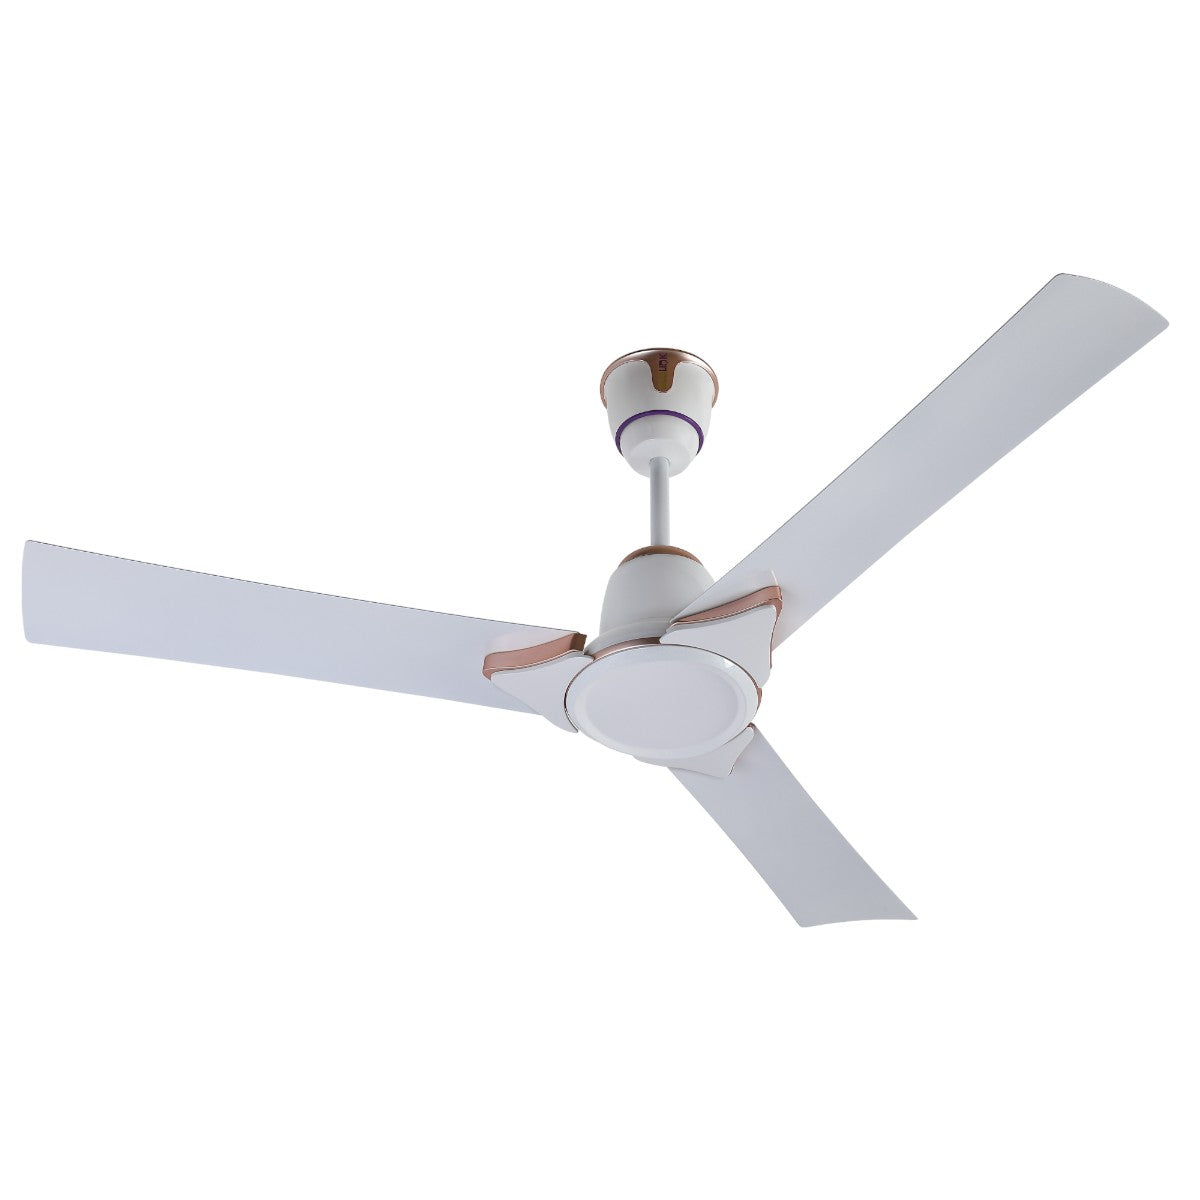 EcoLink AiroSleek Ceiling Fan